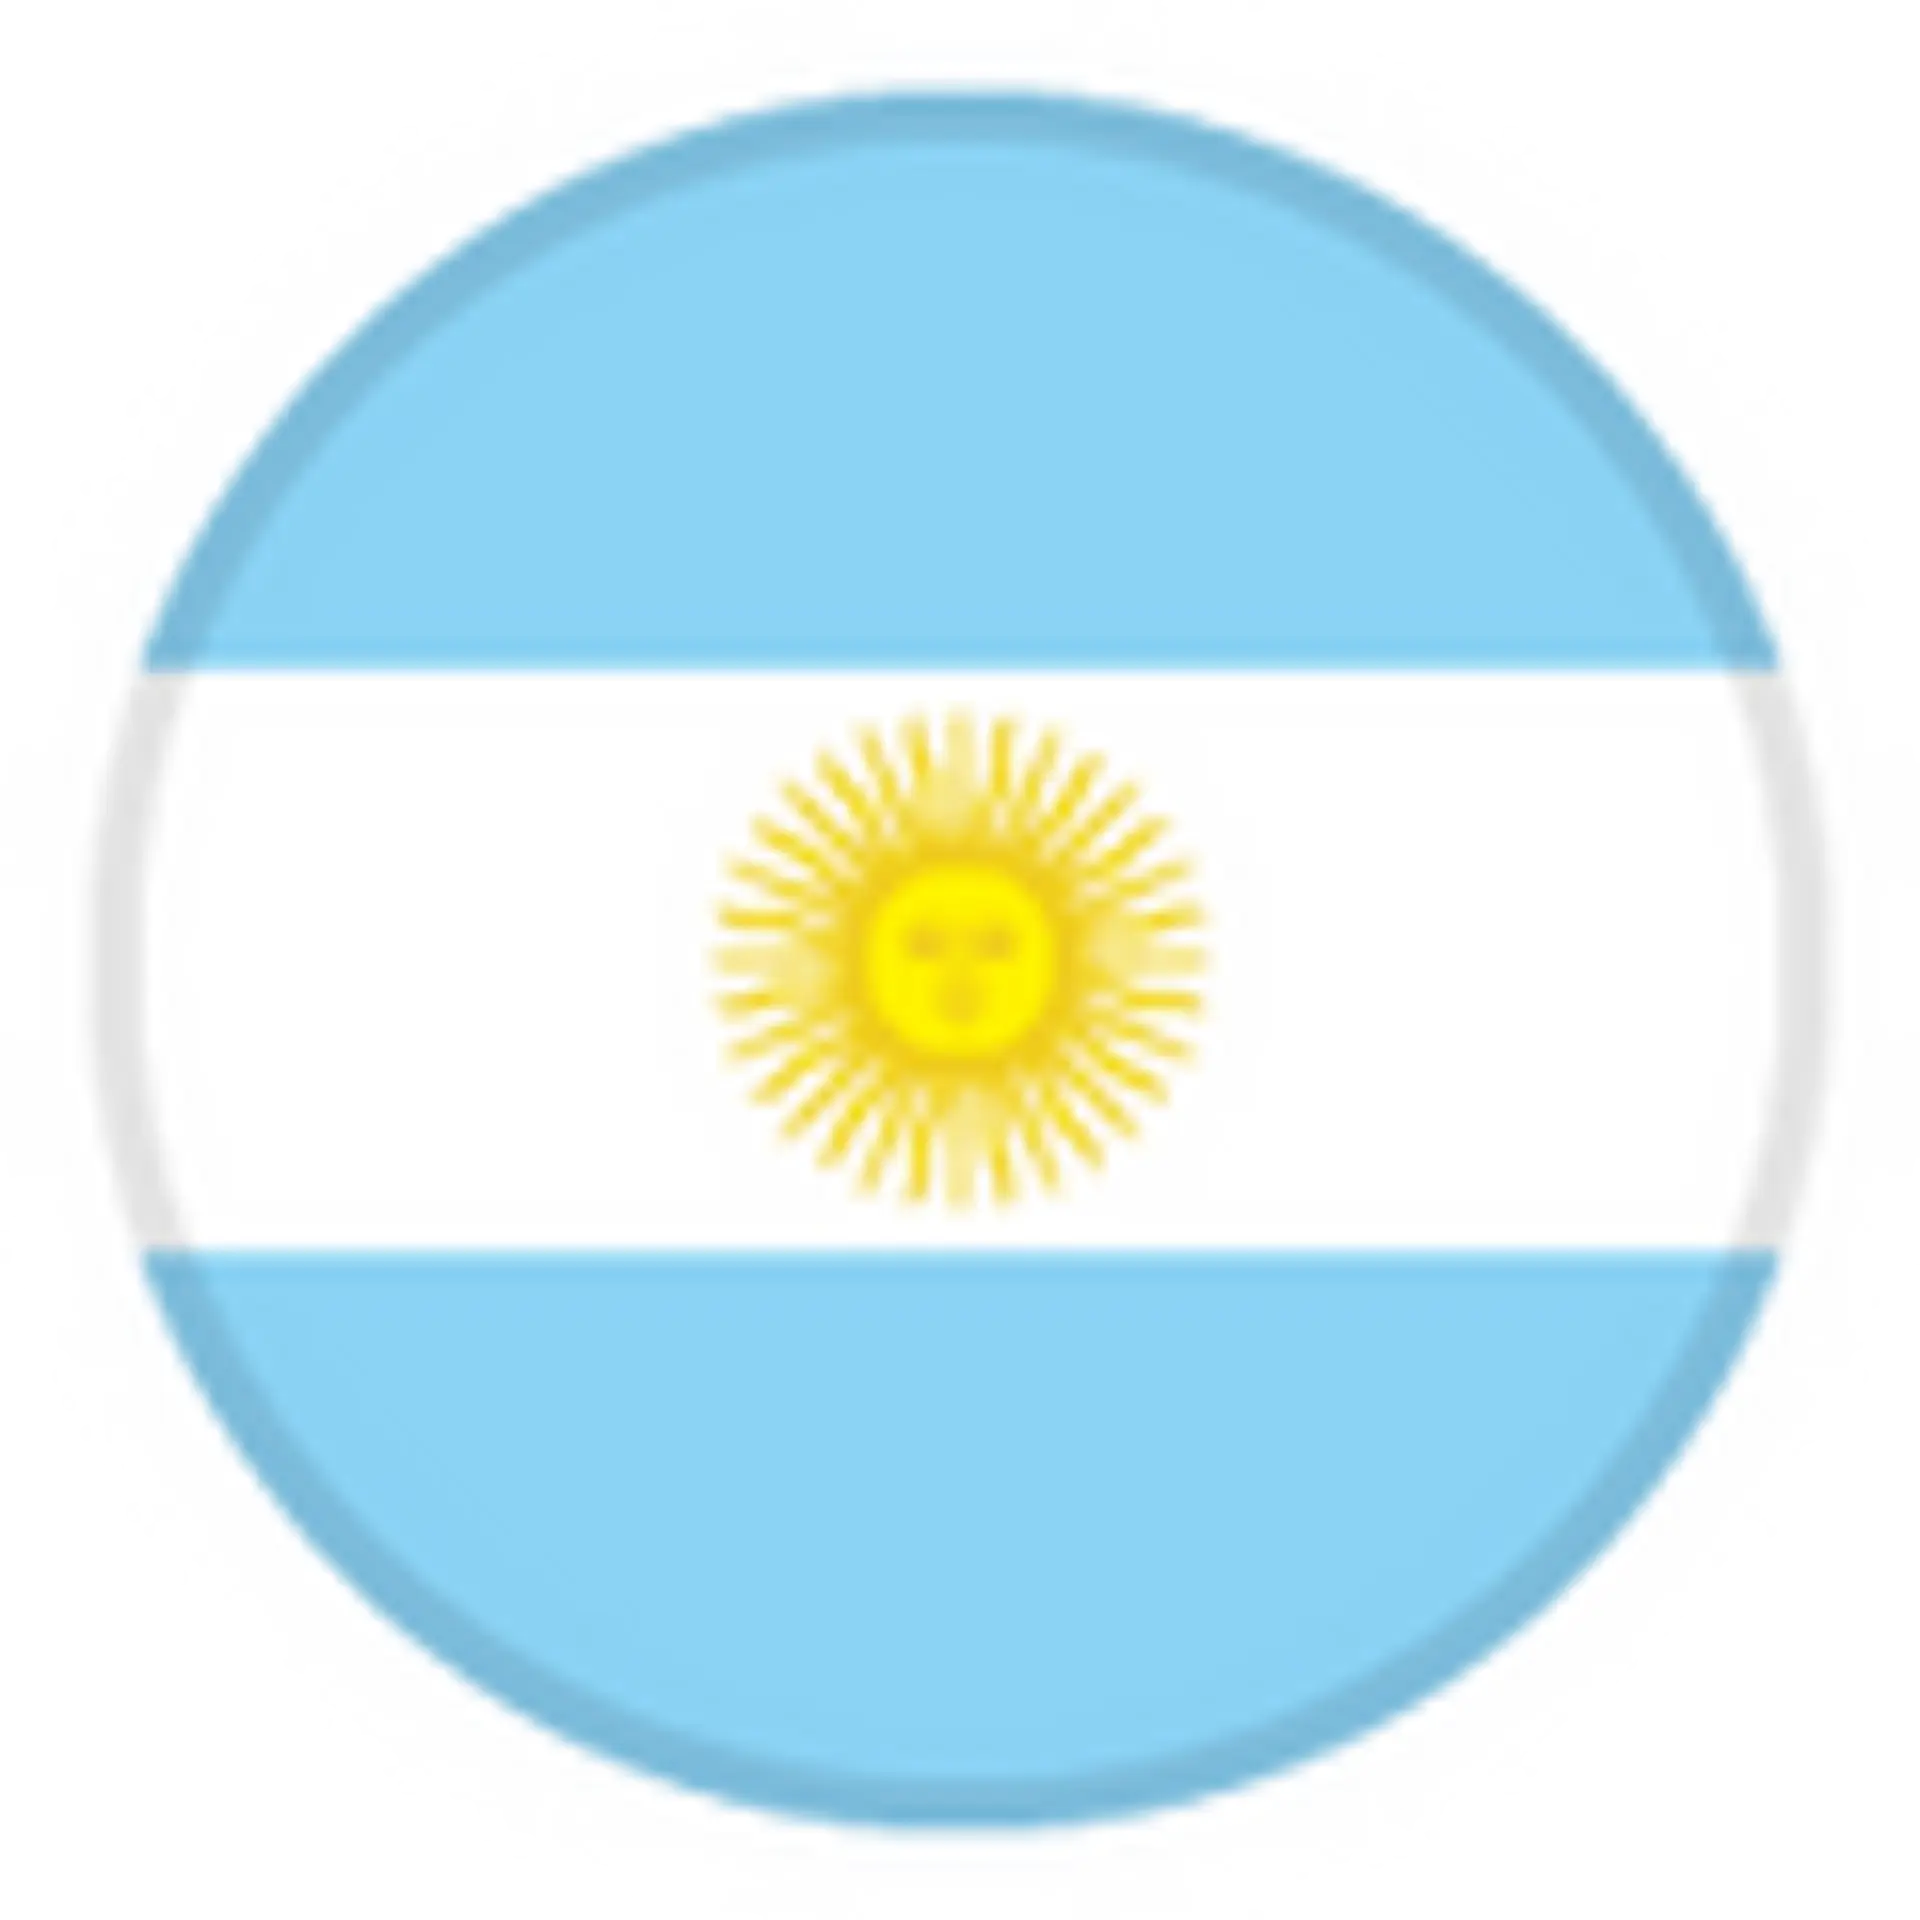 Argentine U-23